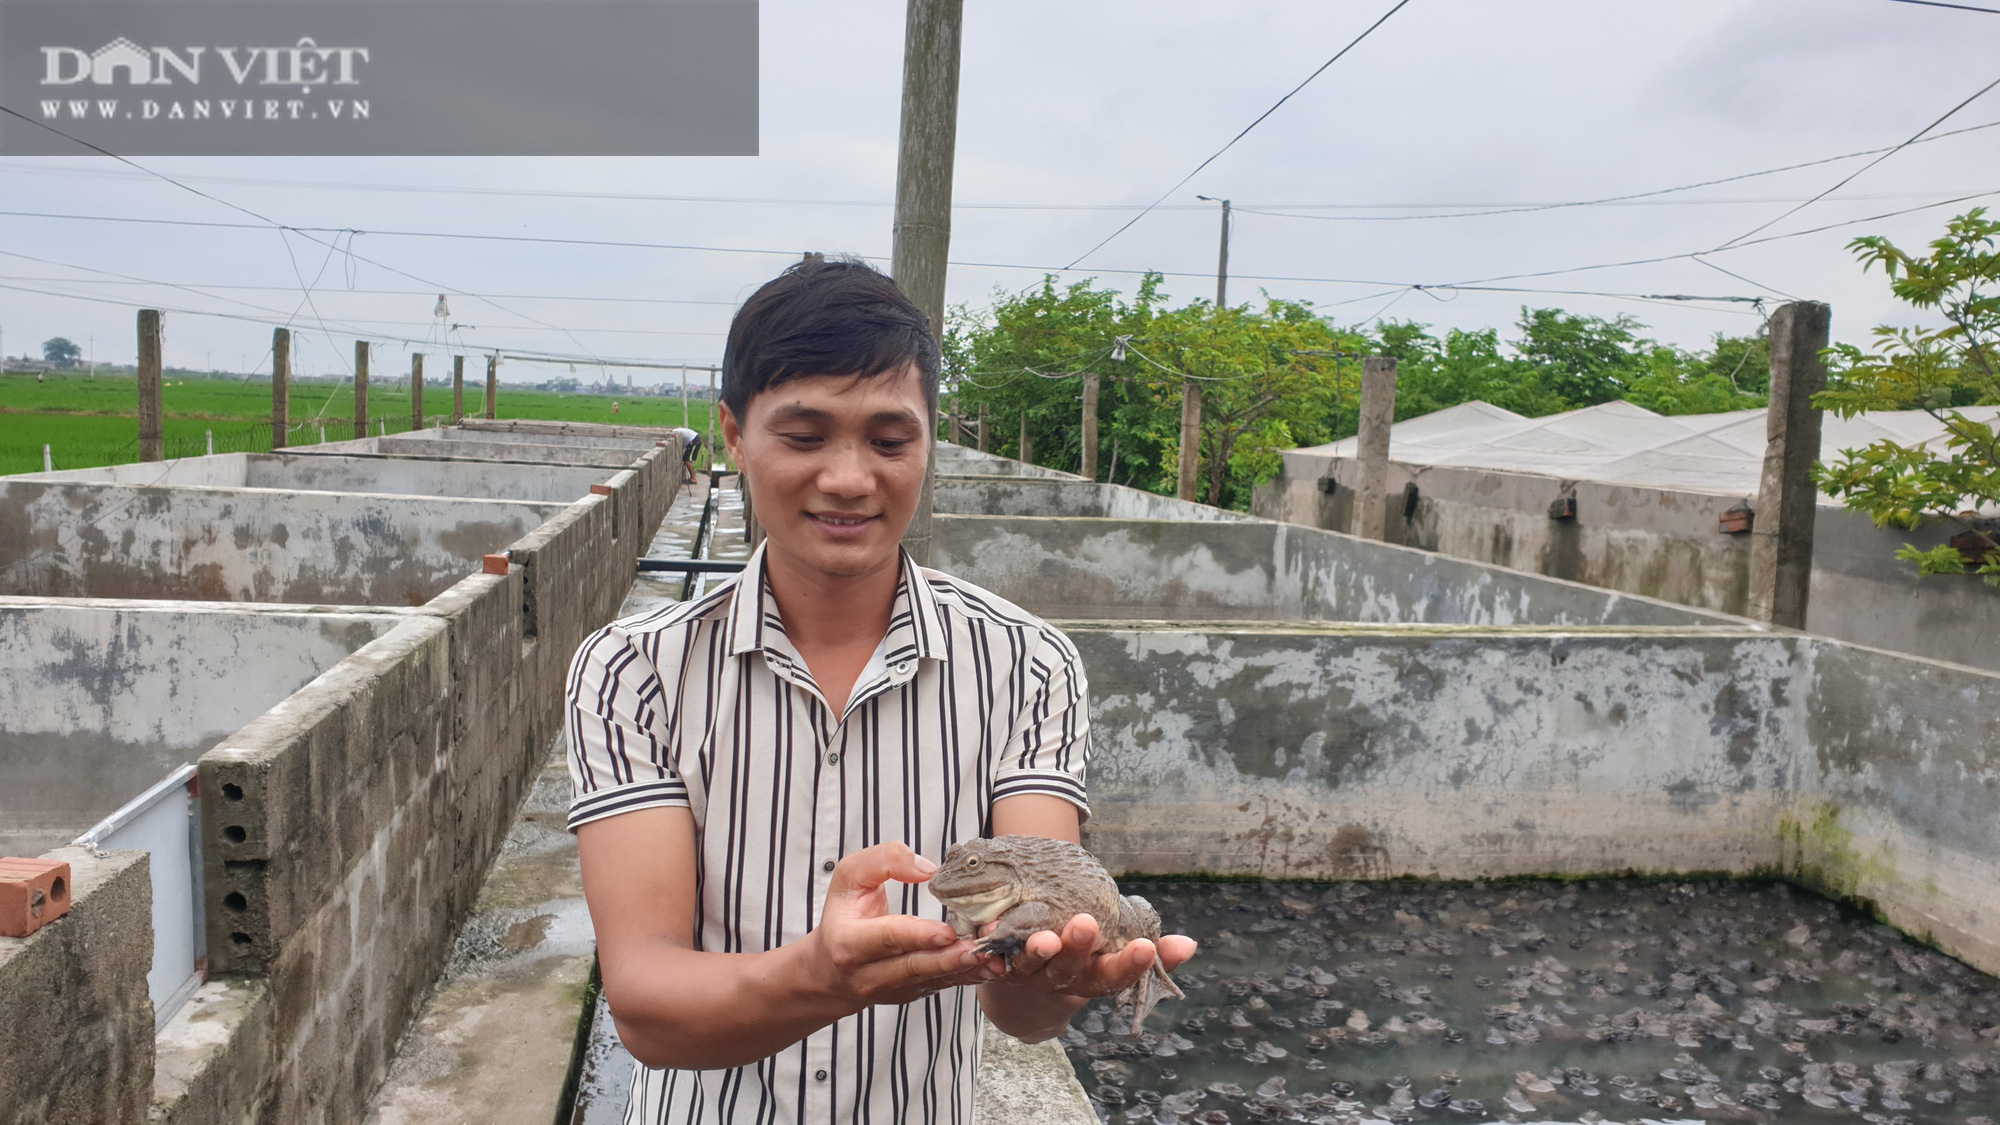  Nam Định: 9x về quê miệt mài nuôi ếch, bỏ túi gần nửa tỷ mỗi năm  - Ảnh 5.